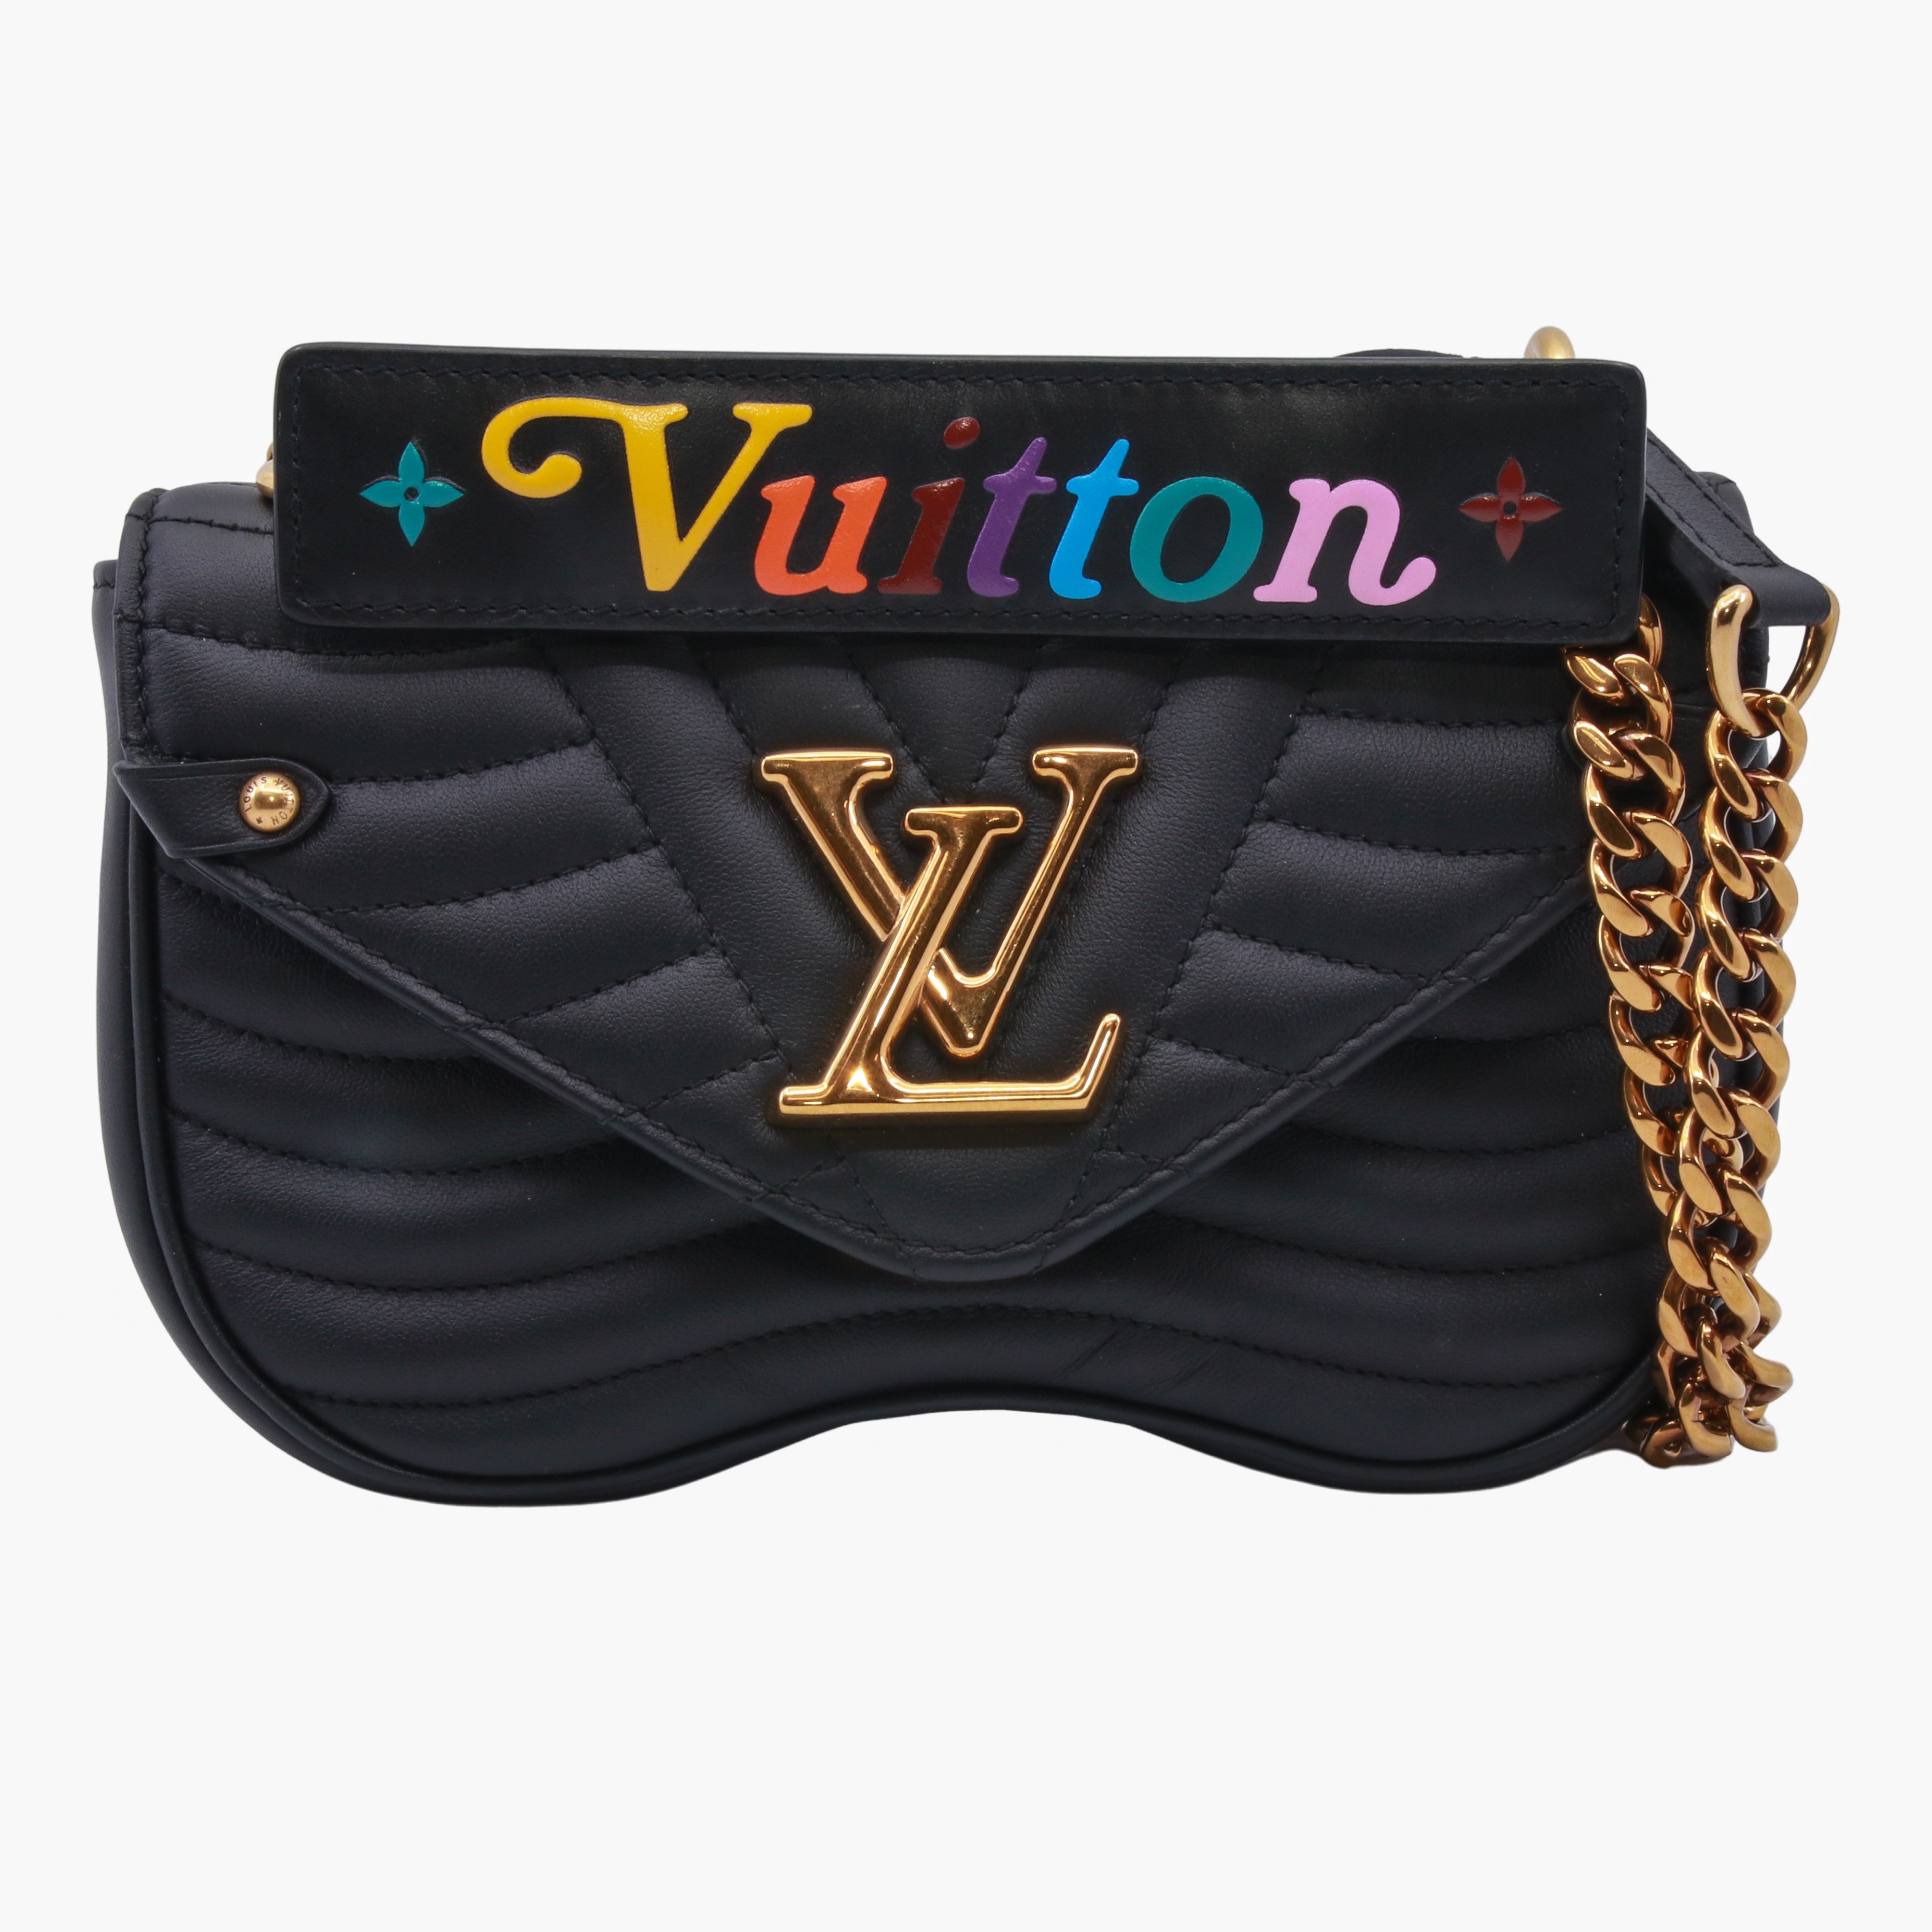 Authentic LOUIS VUITTON New wave Chain Bag M51683 Shoulder bag